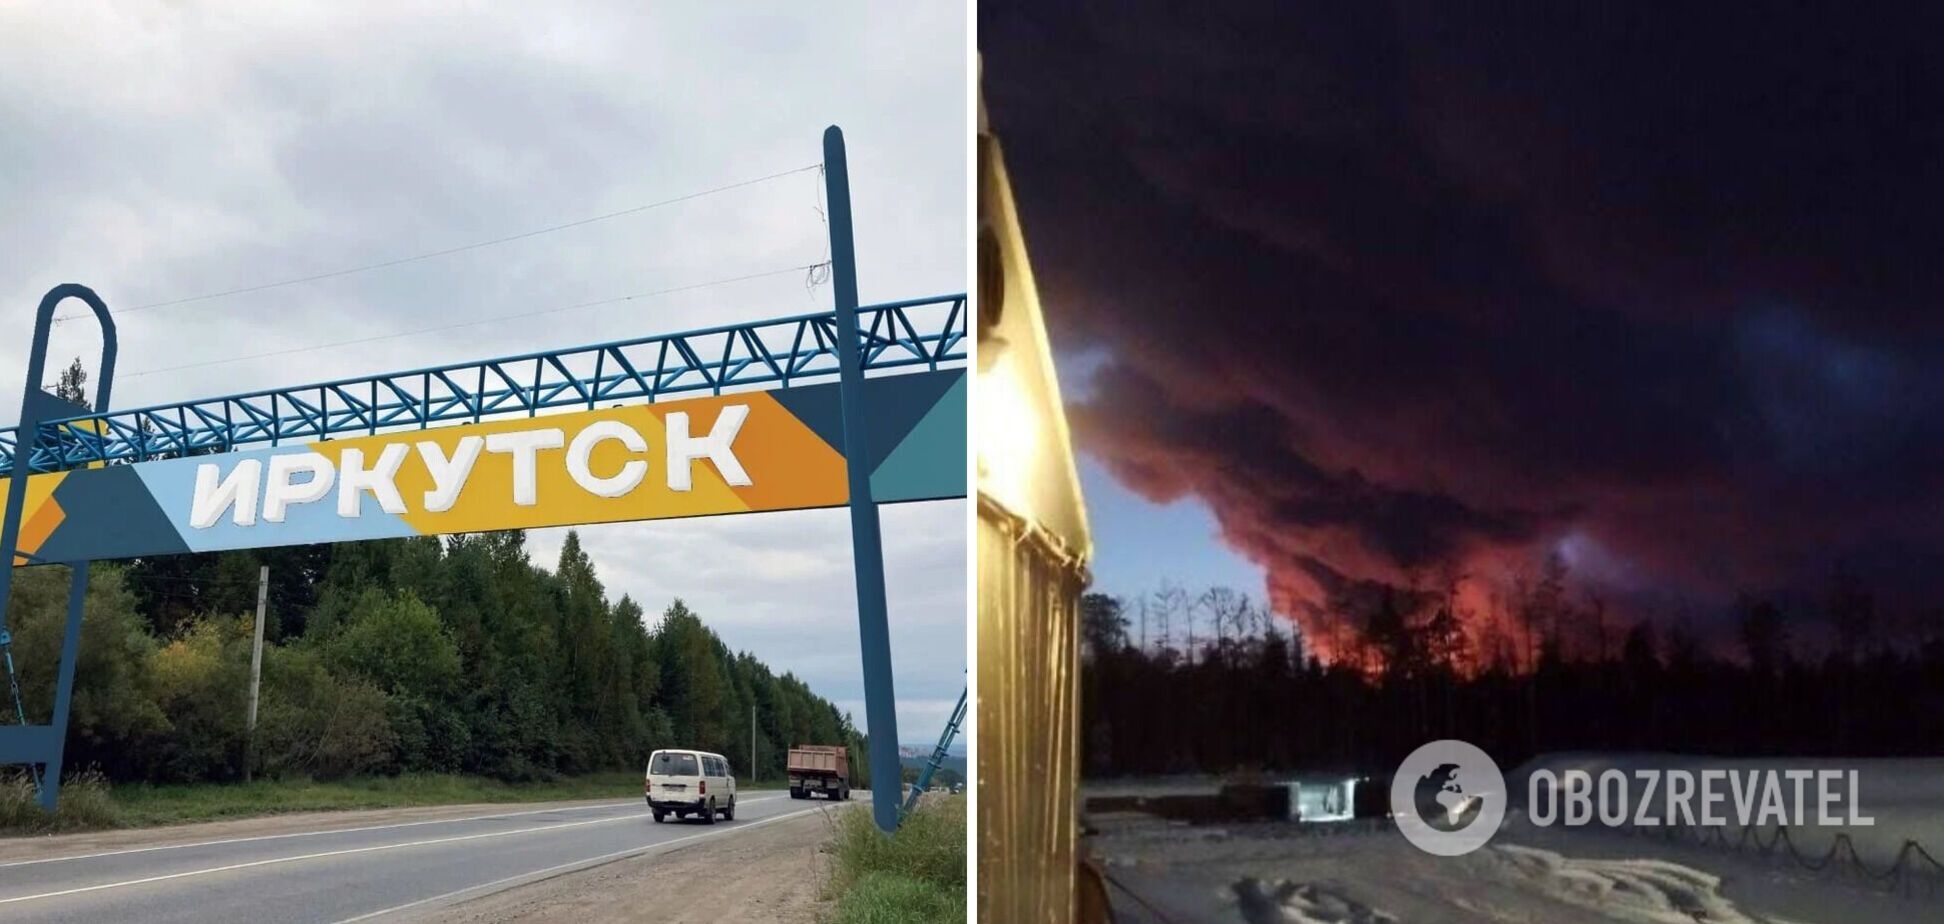 РФ знов у вогні: розгорілася масштабна пожежа на нафтородовищі в Іркутській області. Фото і відео